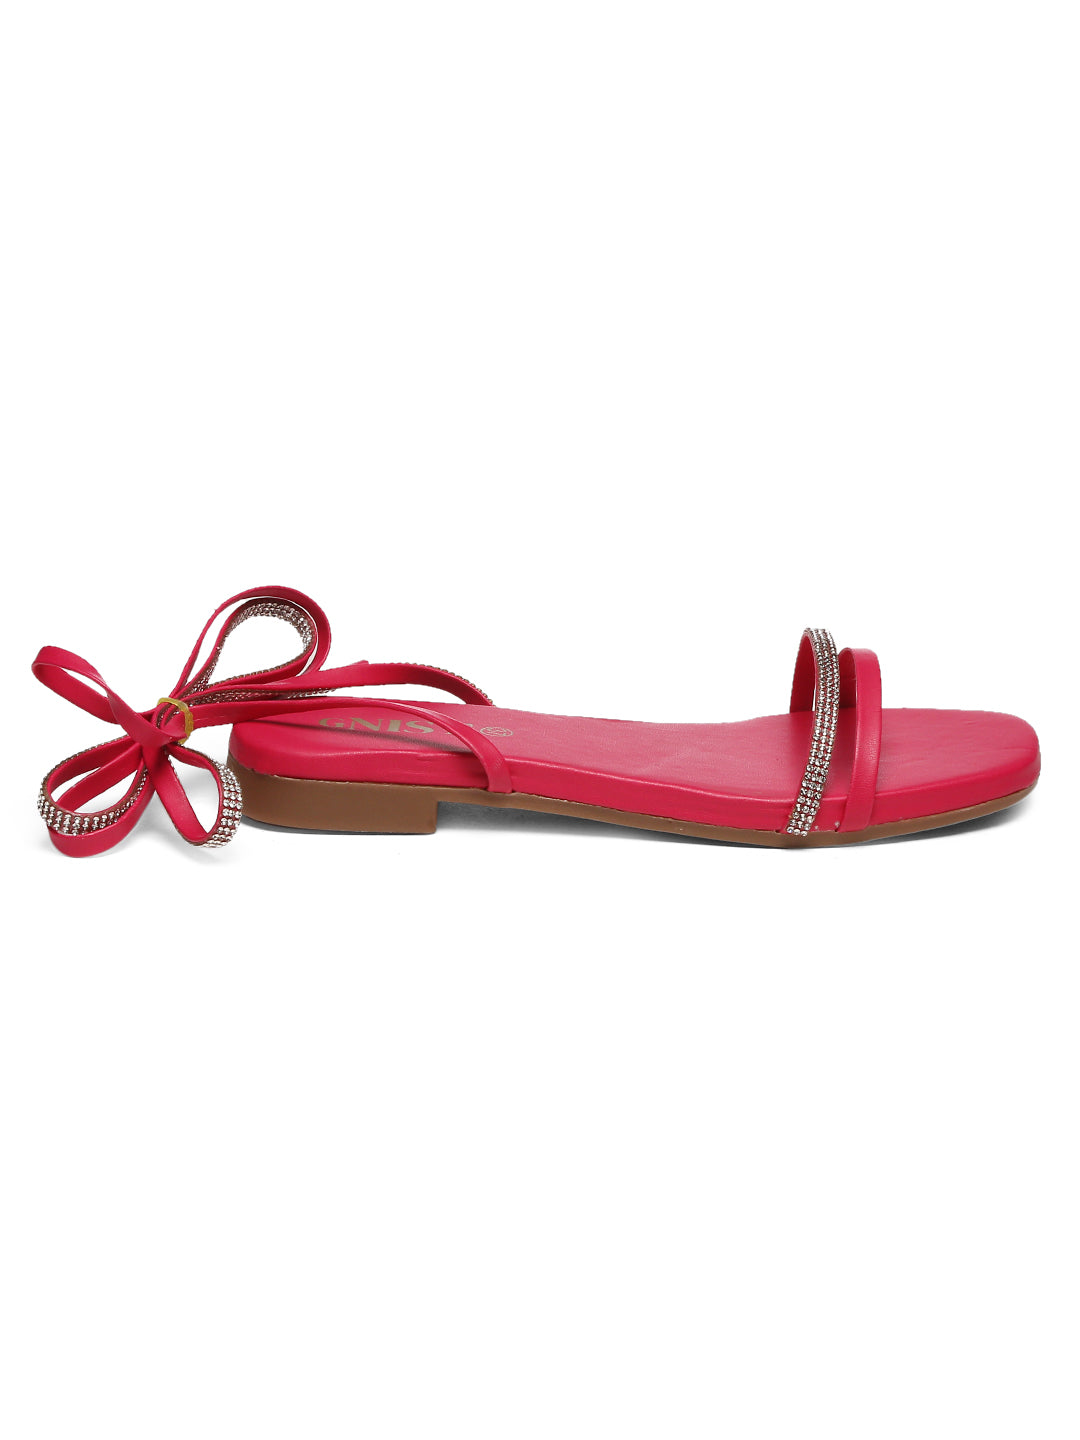 GNIST Hot Pink Embellished Tie up Flat Sandal